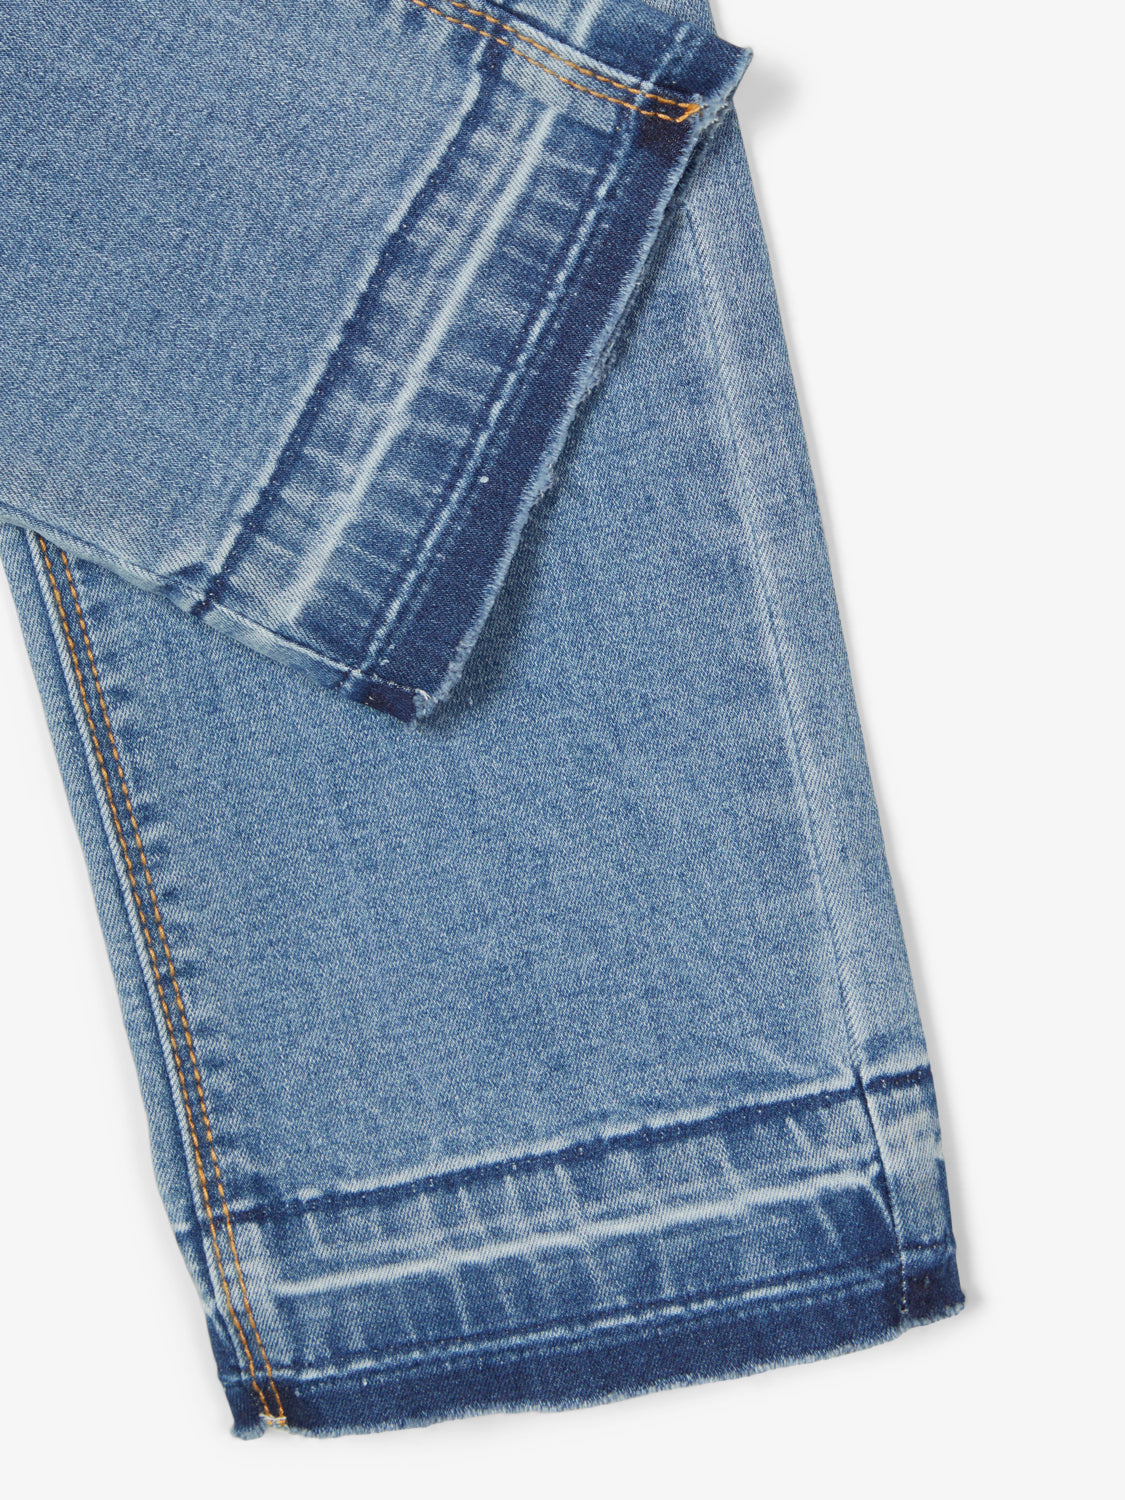 NKFSALLI Jeans - Medium Blue Denim